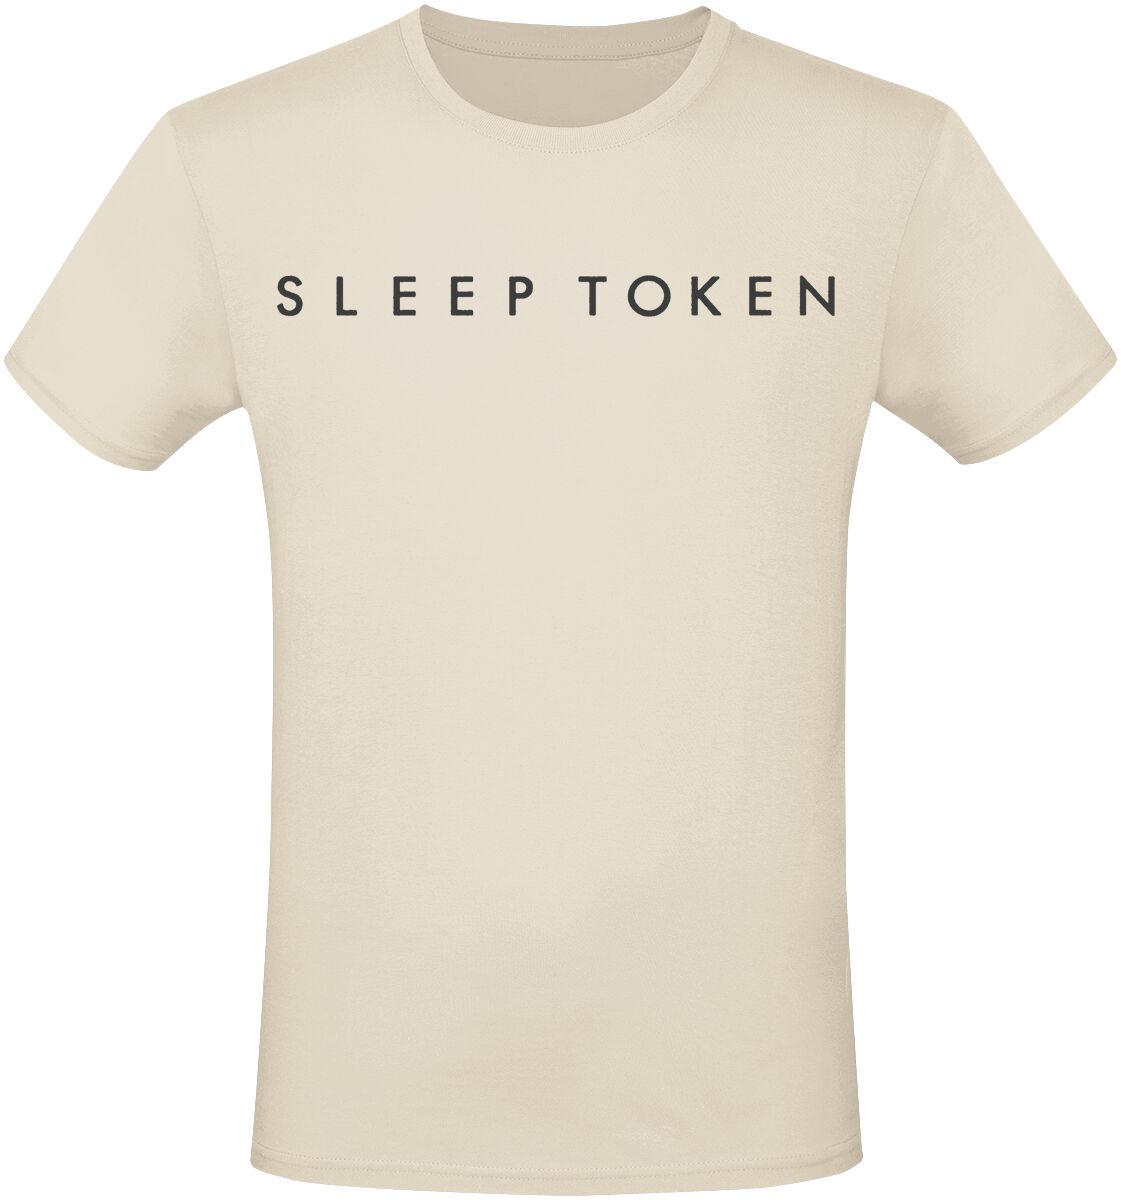 Sleep Token T-Shirt - Take Me Back To Eden - S bis 3XL - für Männer - Größe S - beige  - EMP exklusives Merchandise!